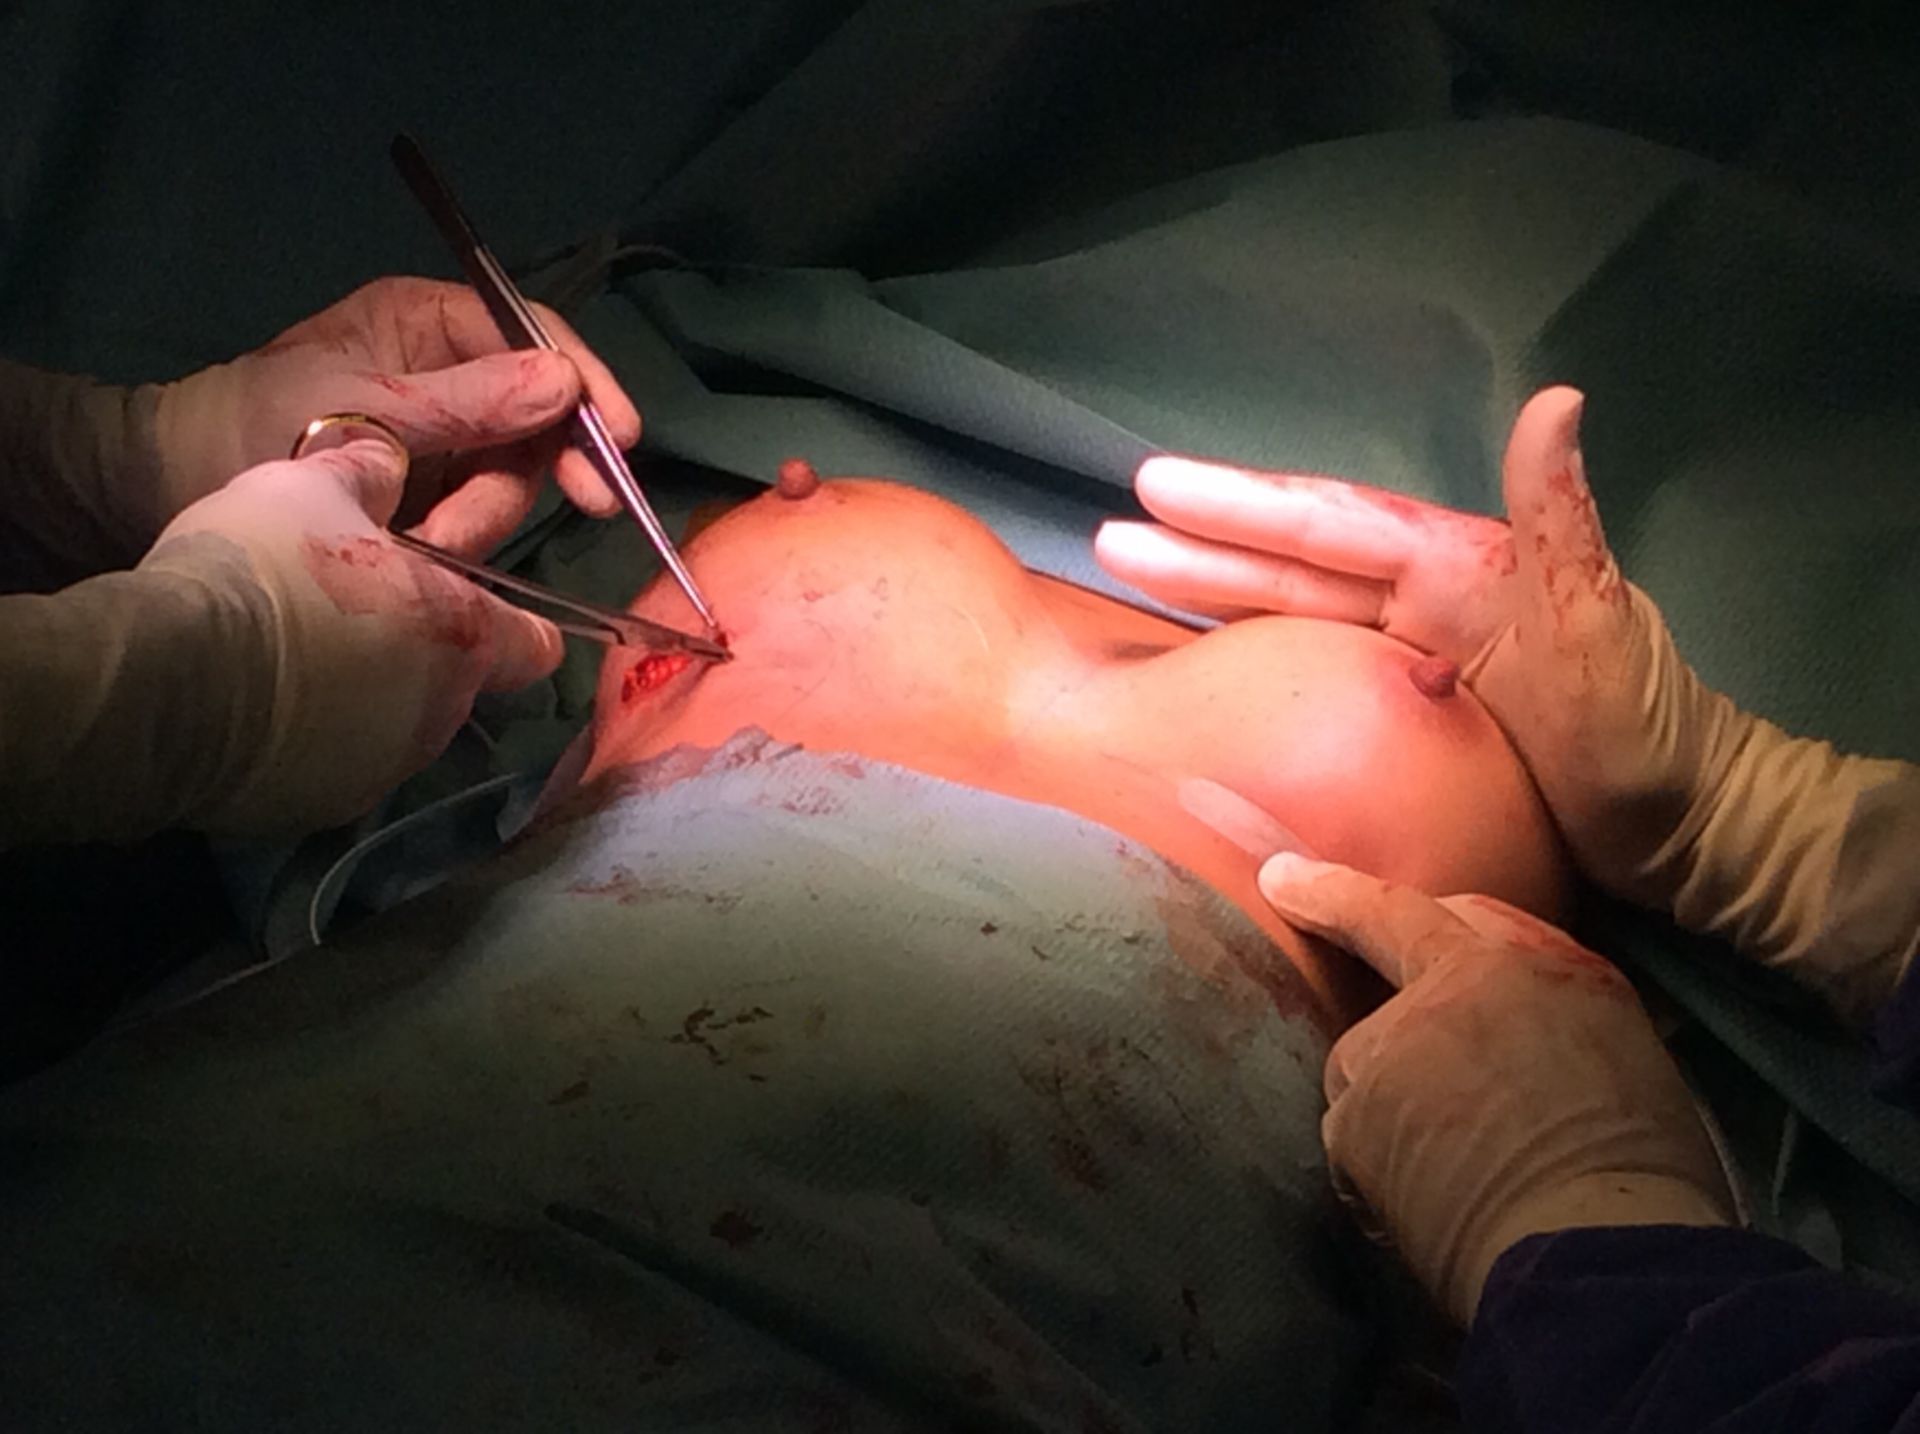 Operatives Verfahren zur Brustvergrößerung